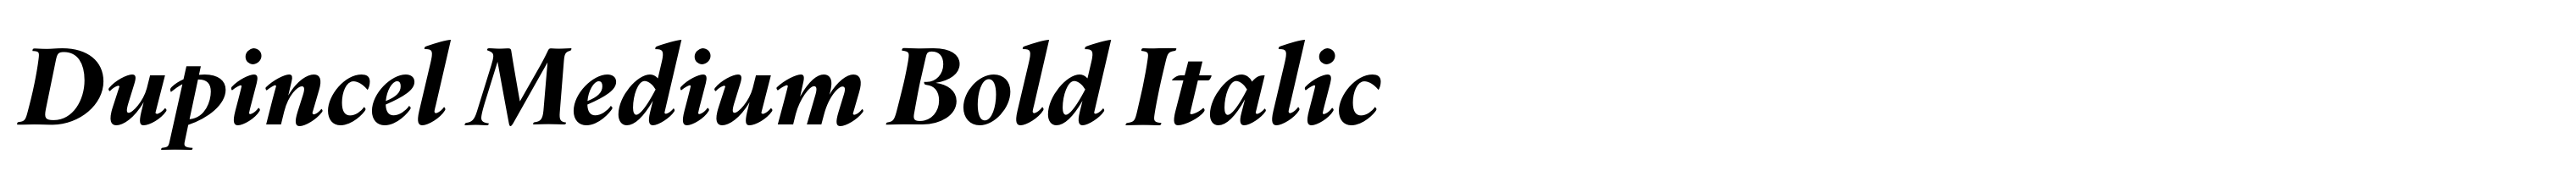 Dupincel Medium Bold Italic